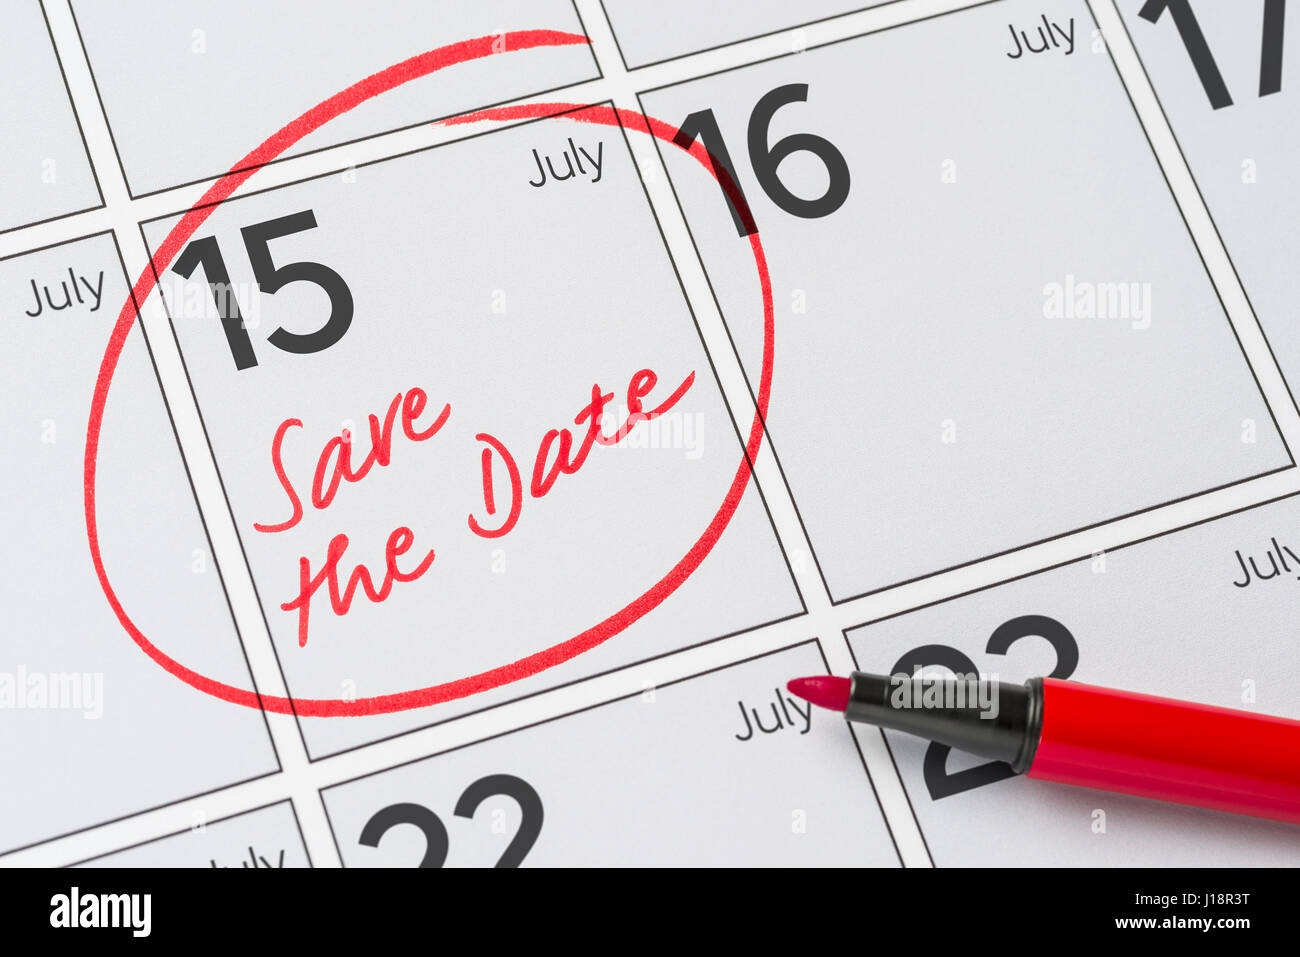 Enregistrer la date inscrite sur un calendrier - Juillet 15 Banque D'Images